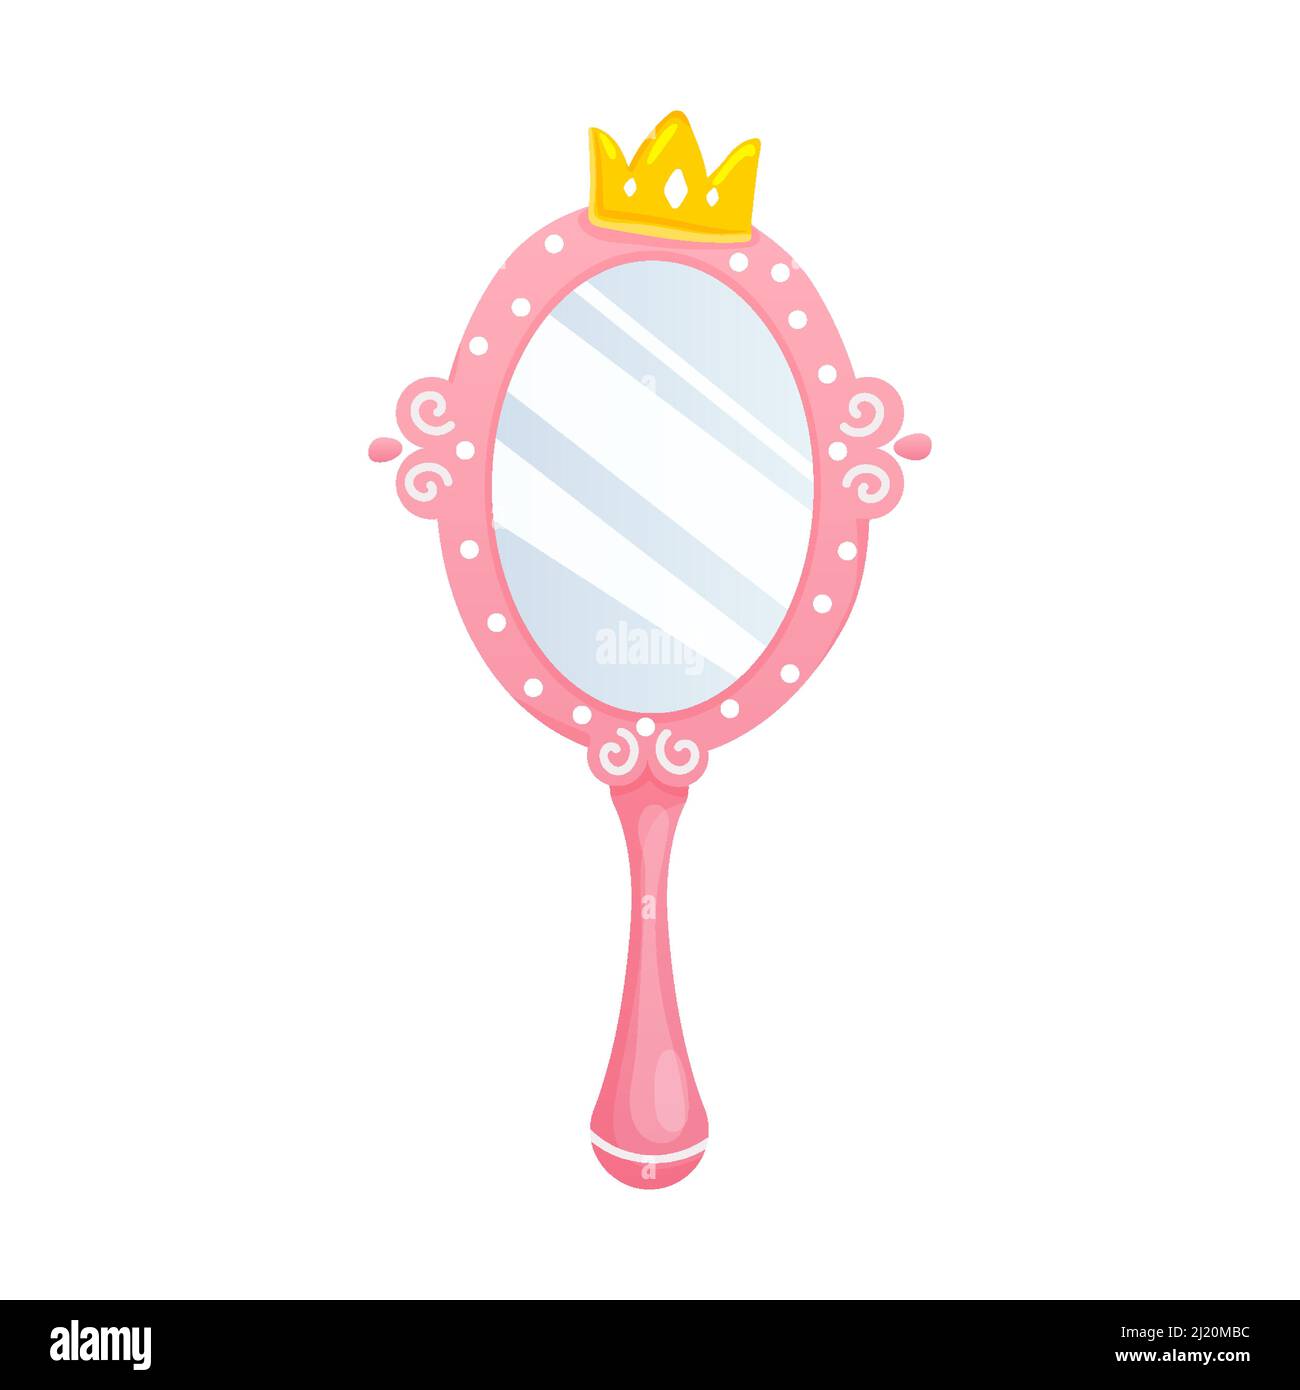 Prinzessin Handspiegel.Ovale rosa Spiegel mit Goldkrone für  Mädchen.Cartoon-Stil Stock-Vektorgrafik - Alamy